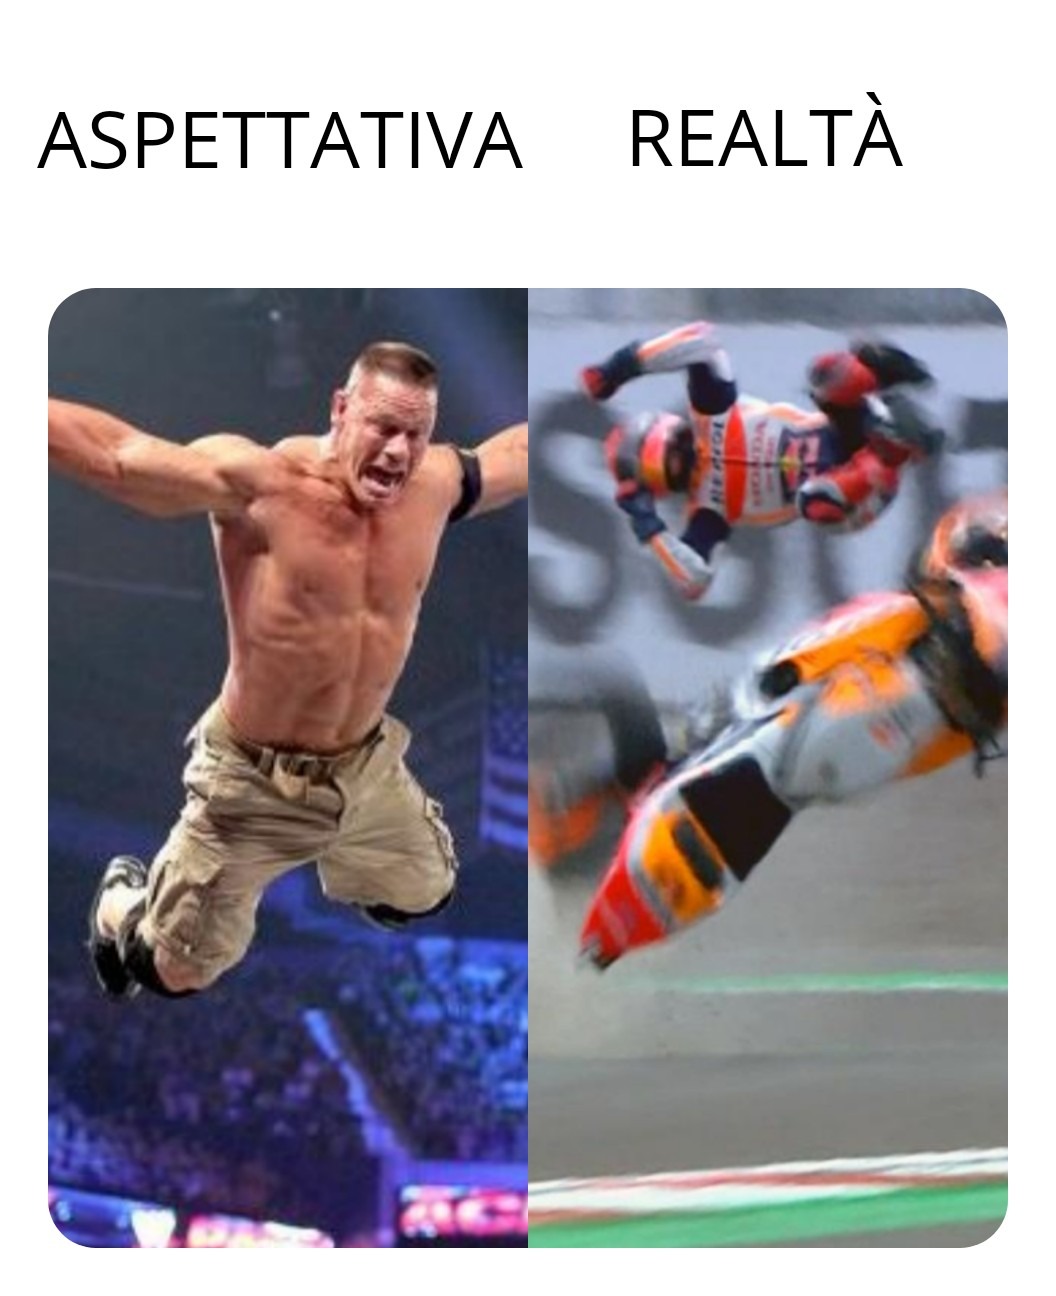 Aspettativa vs realtà - meme